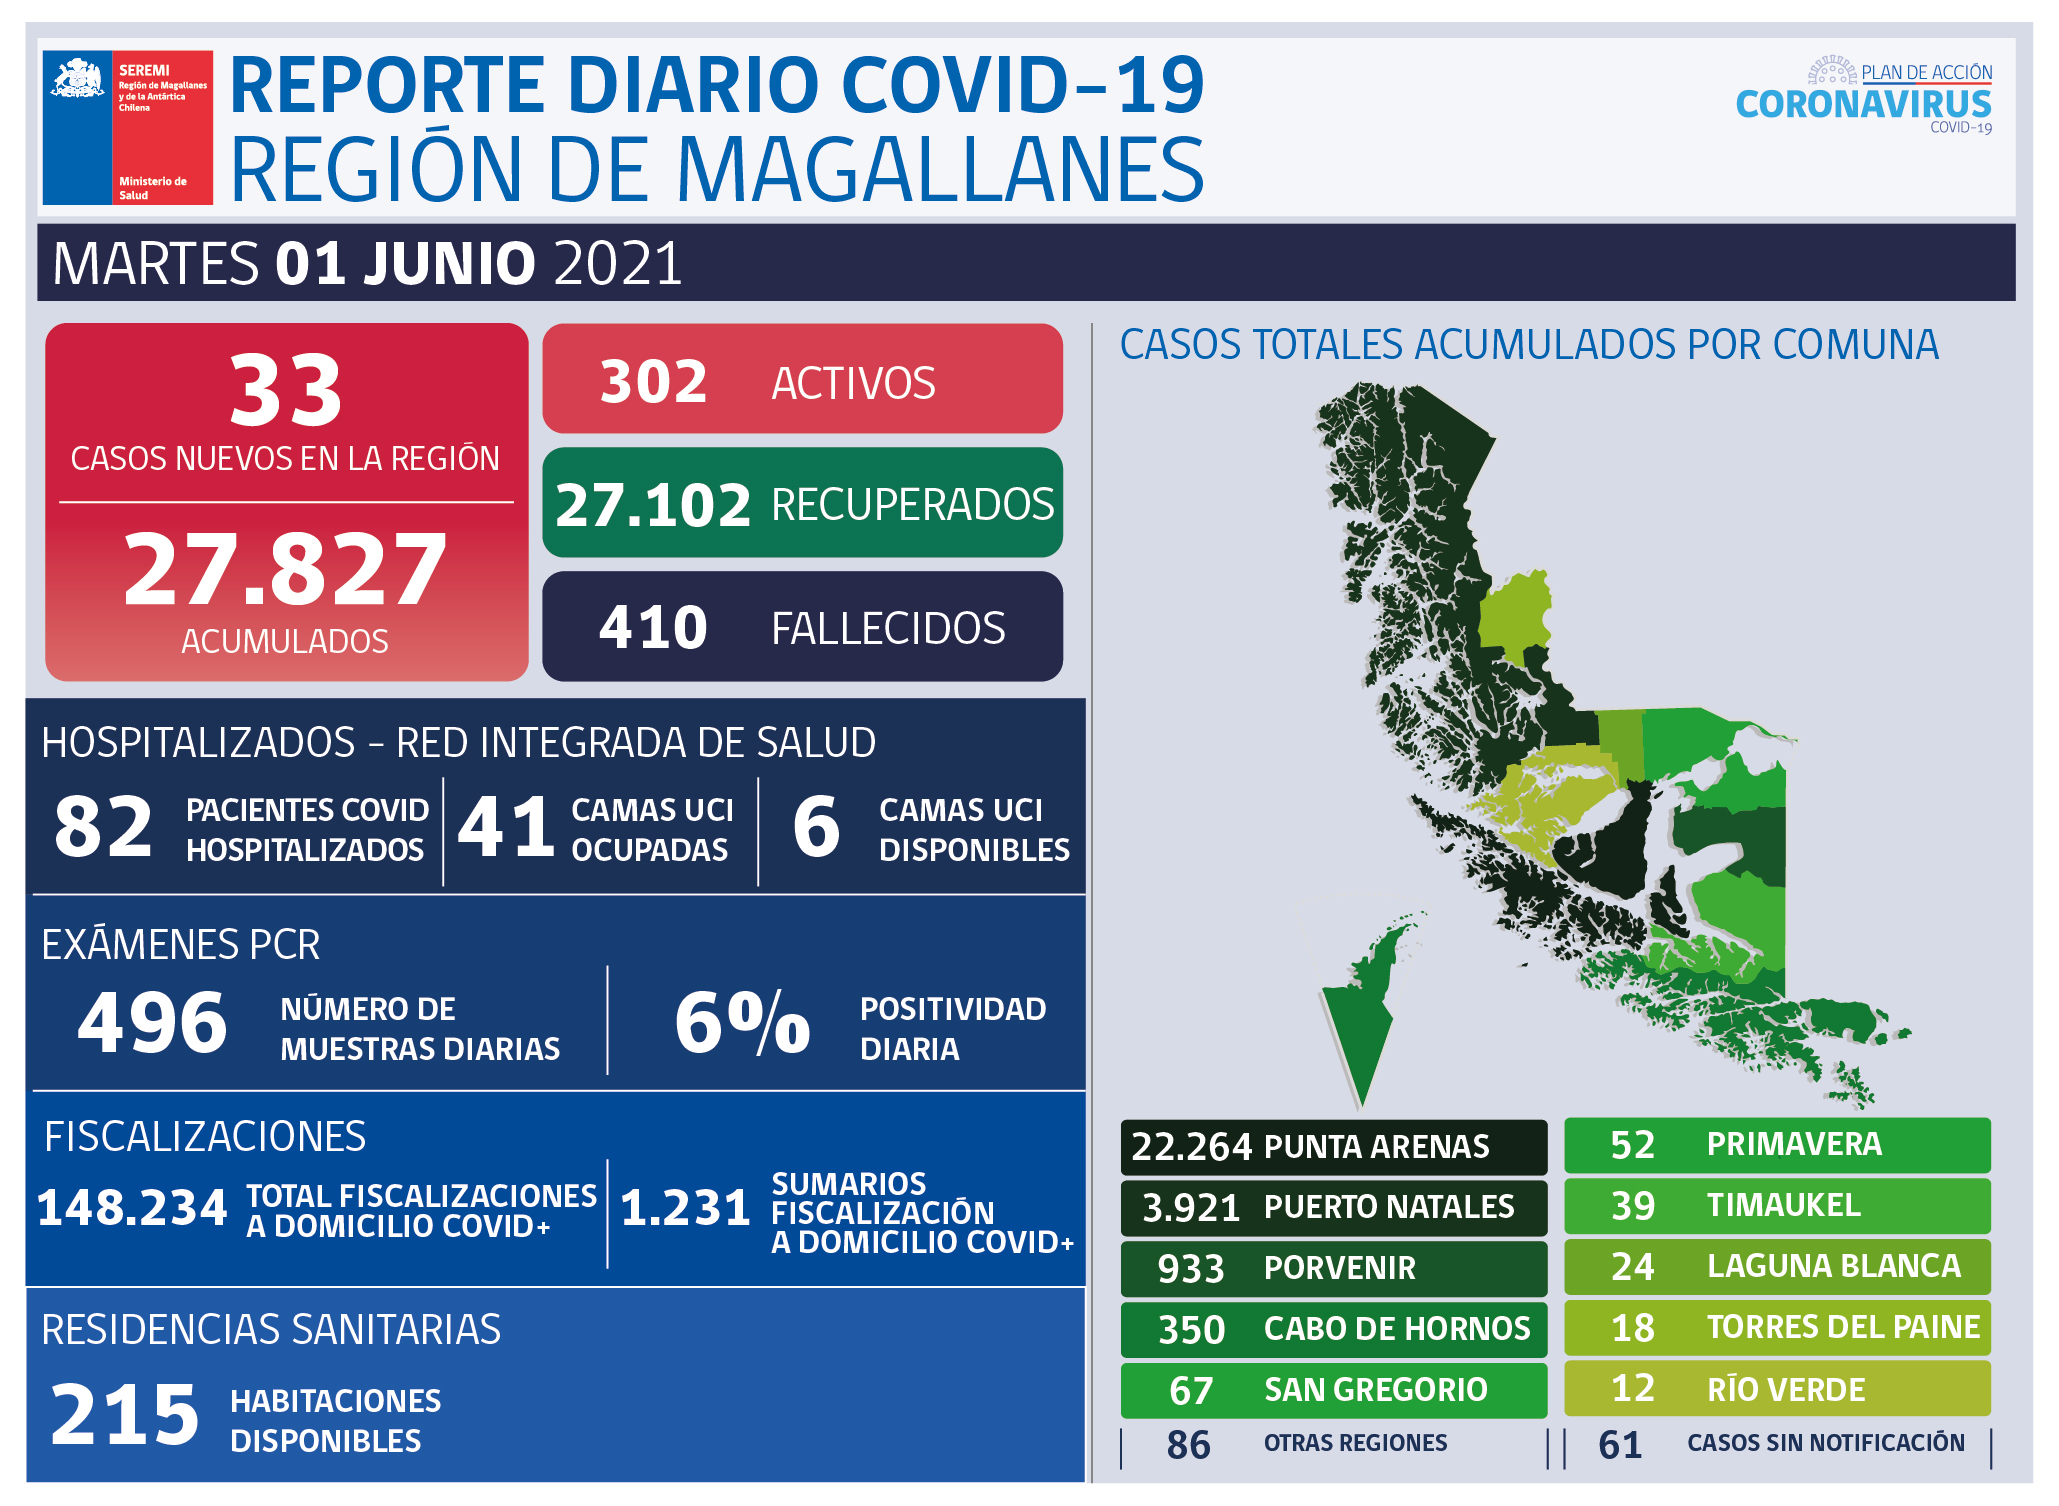 33 casos nuevos de covid19 registra Magallanes este martes 1° de junio